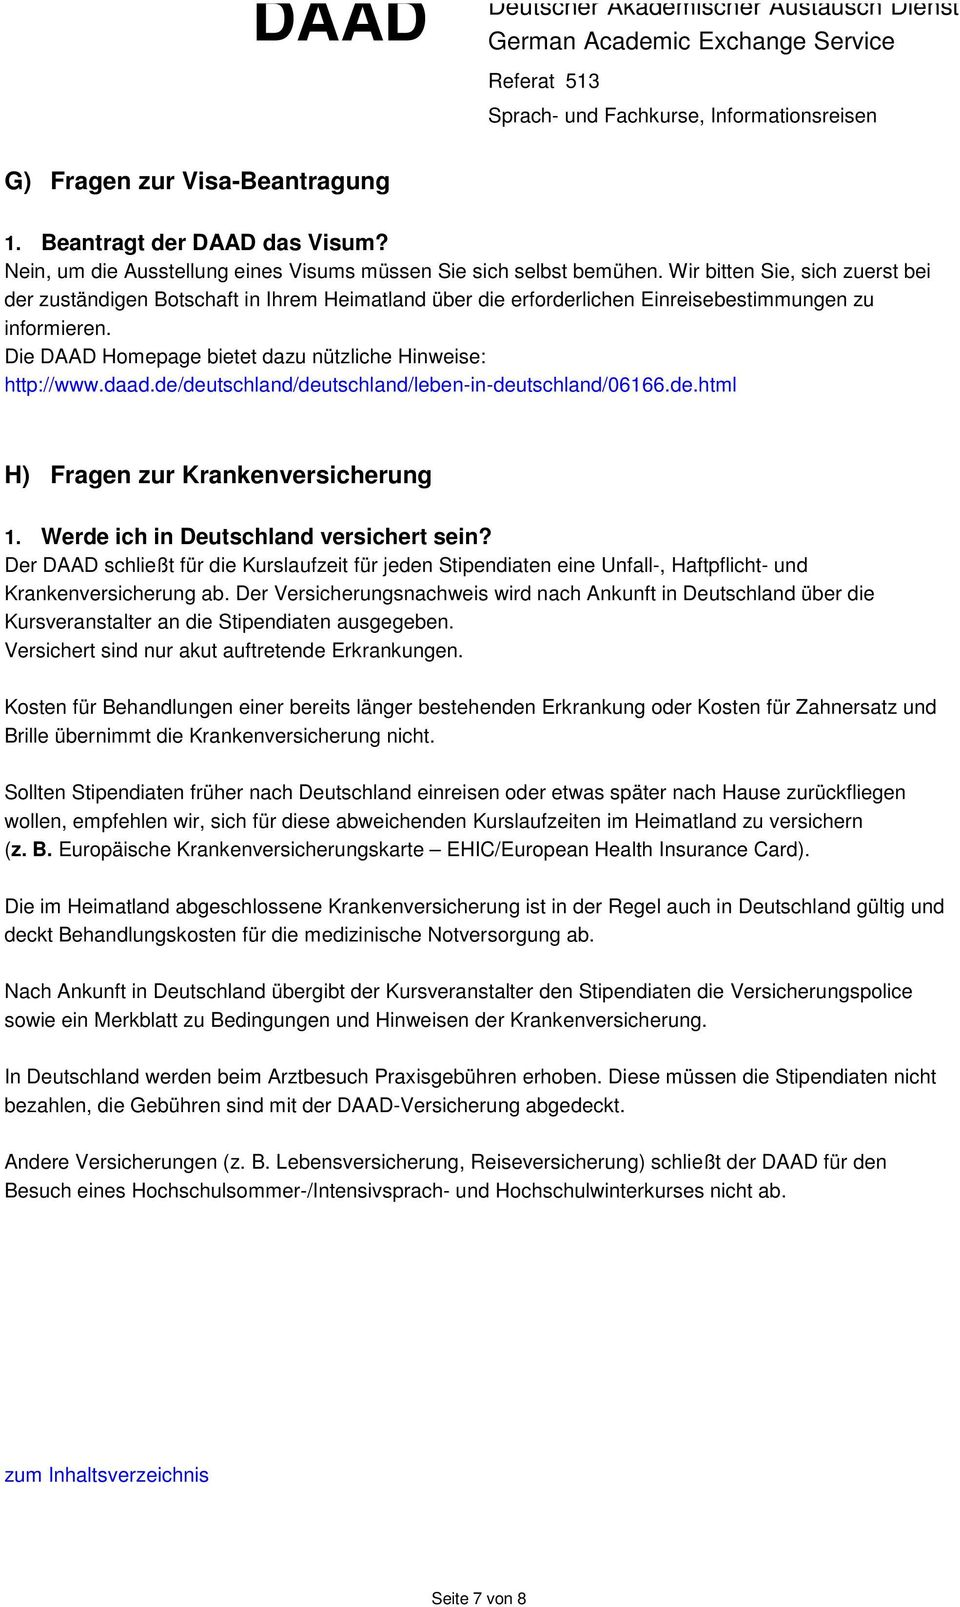 daad.de/deutschland/deutschland/leben-in-deutschland/06166.de.html H) Fragen zur Krankenversicherung 1. Werde ich in Deutschland versichert sein?